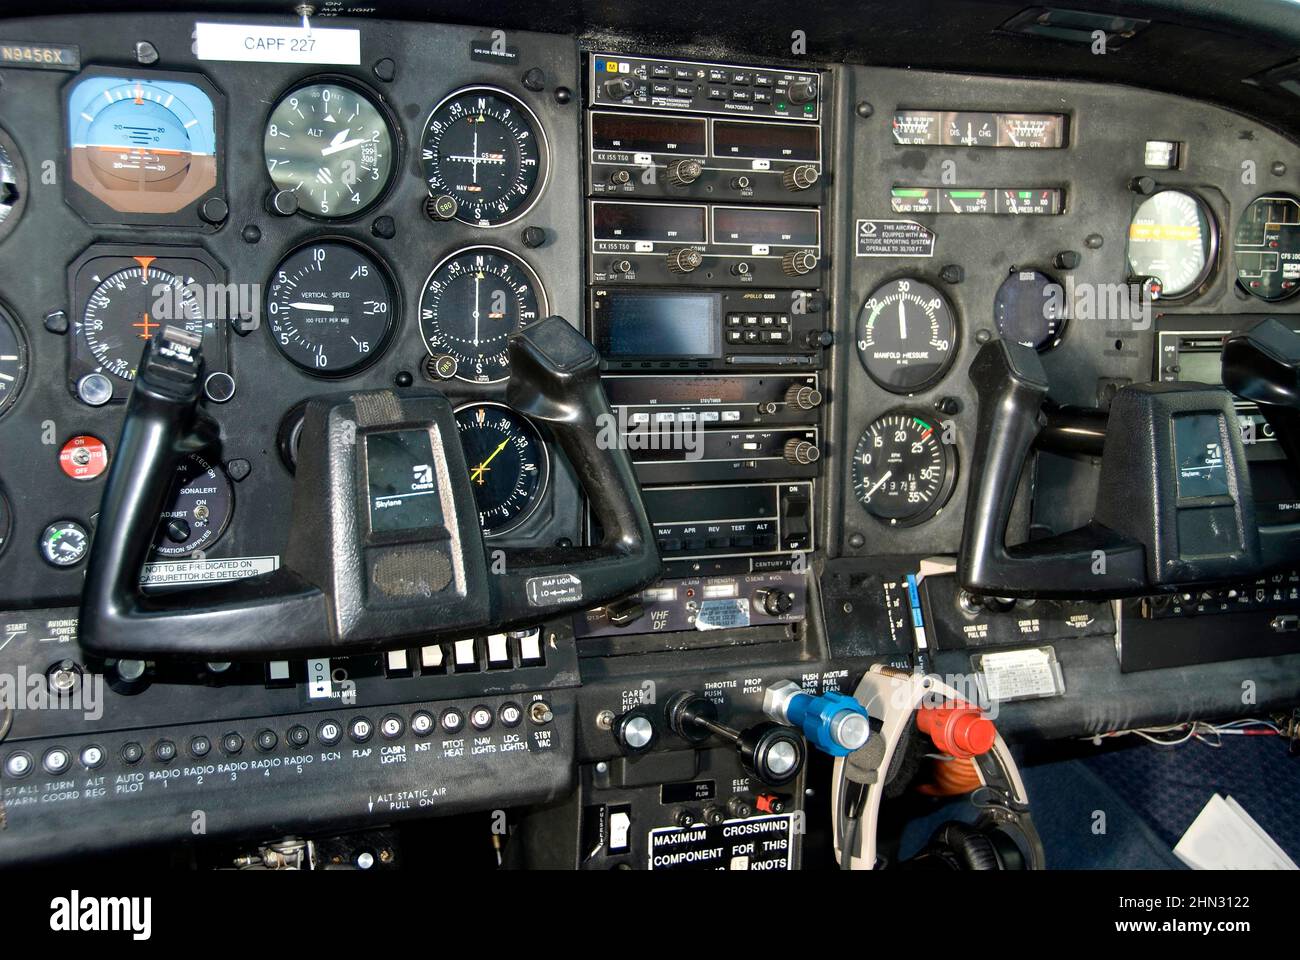 tablero de un panel de control de la aeronave que muestra todas las gages de navegación, diales y otros instrumentos de conectividad de radio Foto de stock